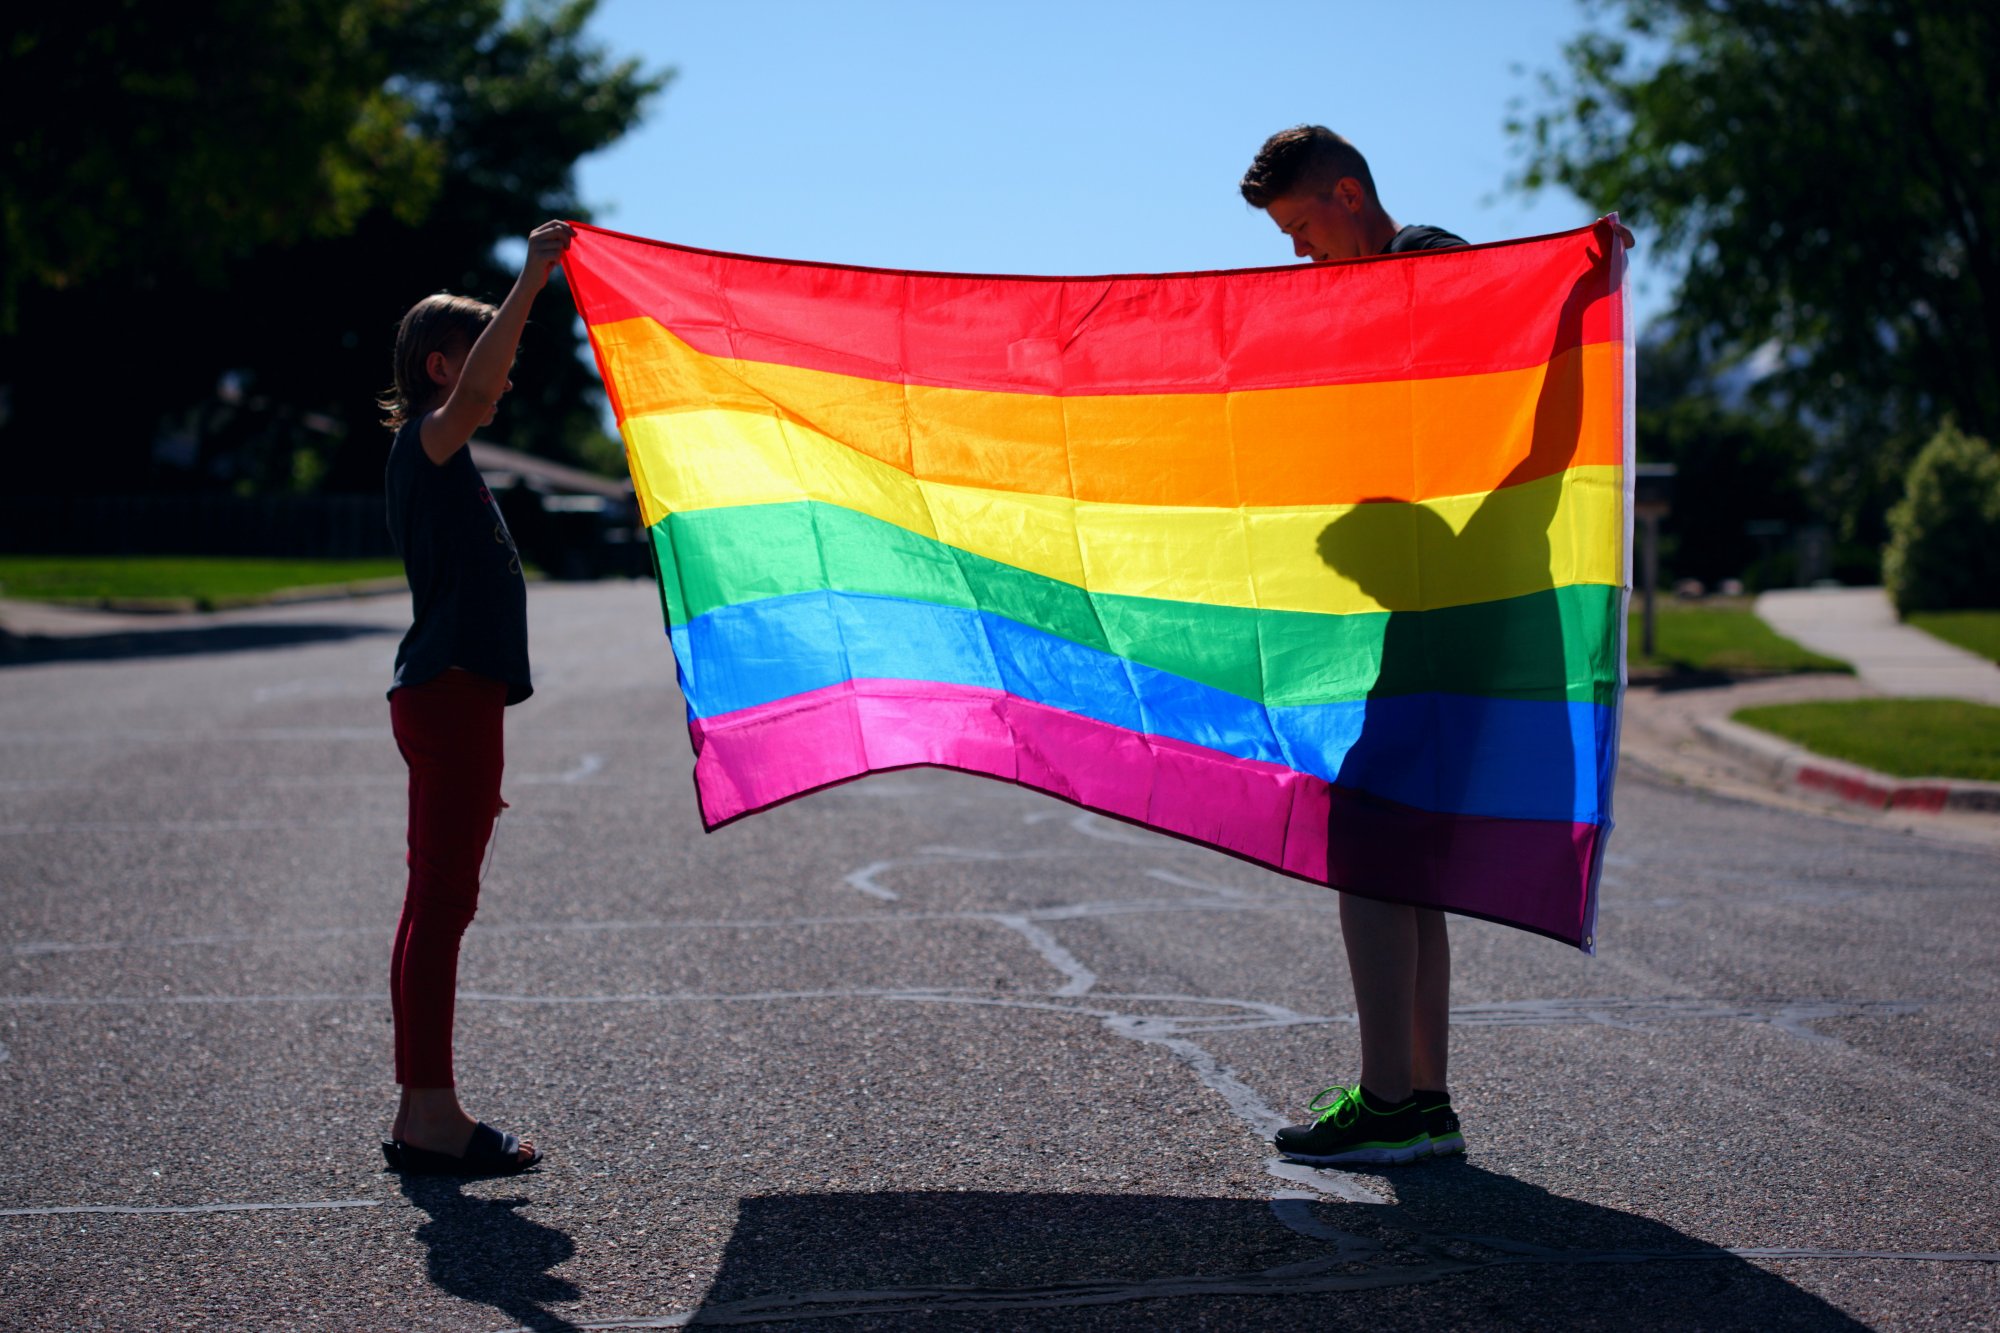 Η πρώτη ληξιαρχική εγγραφή παιδιού γκέι ζευγαριού - Αποκτήθηκε από παρένθετη μητέρα στο εξωτερικό